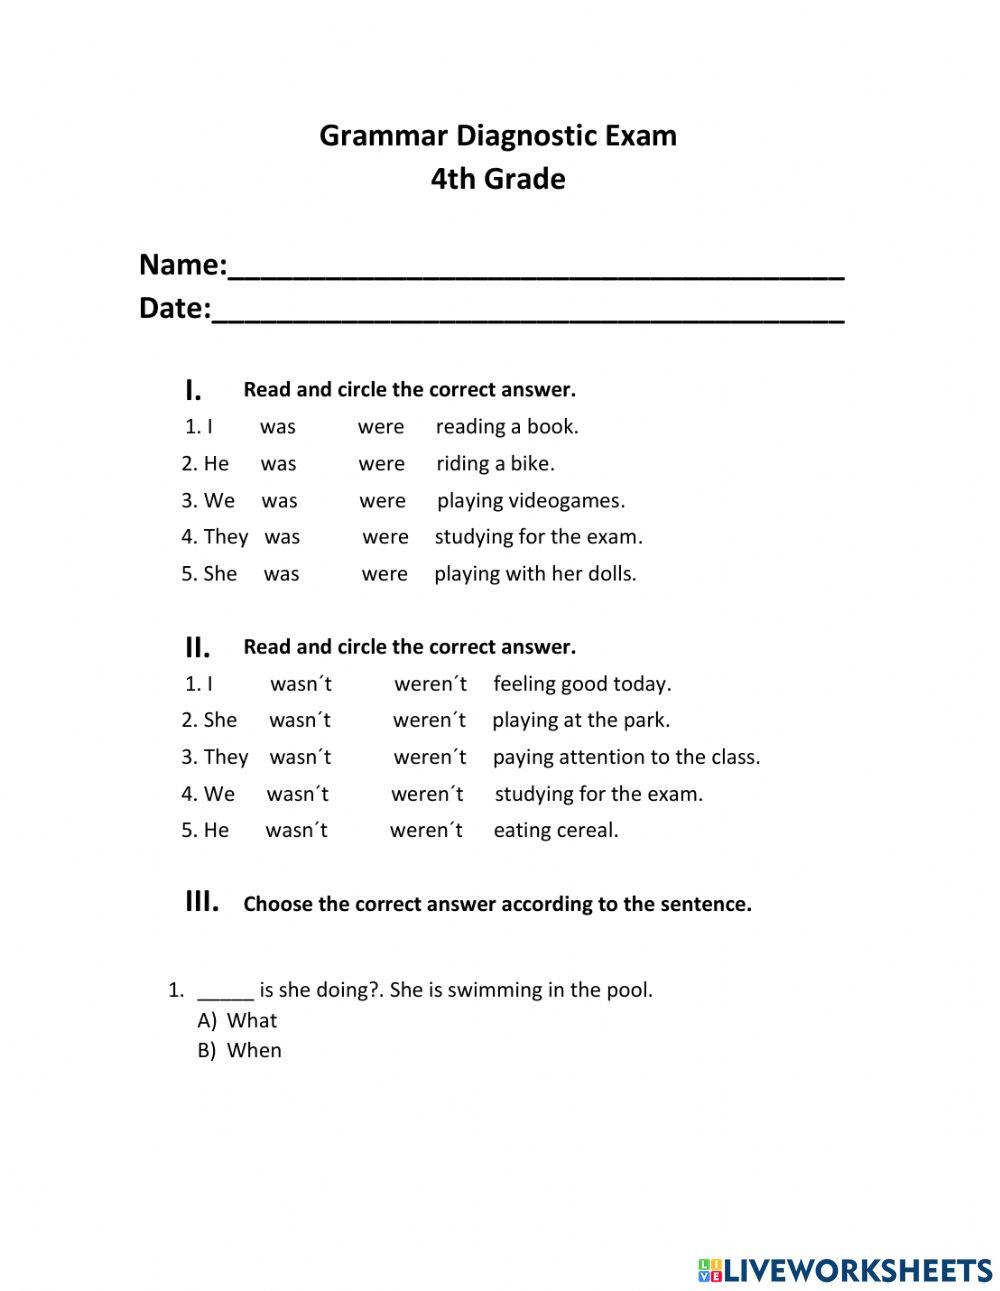 Grammar Diagnostic Exam 4th grade